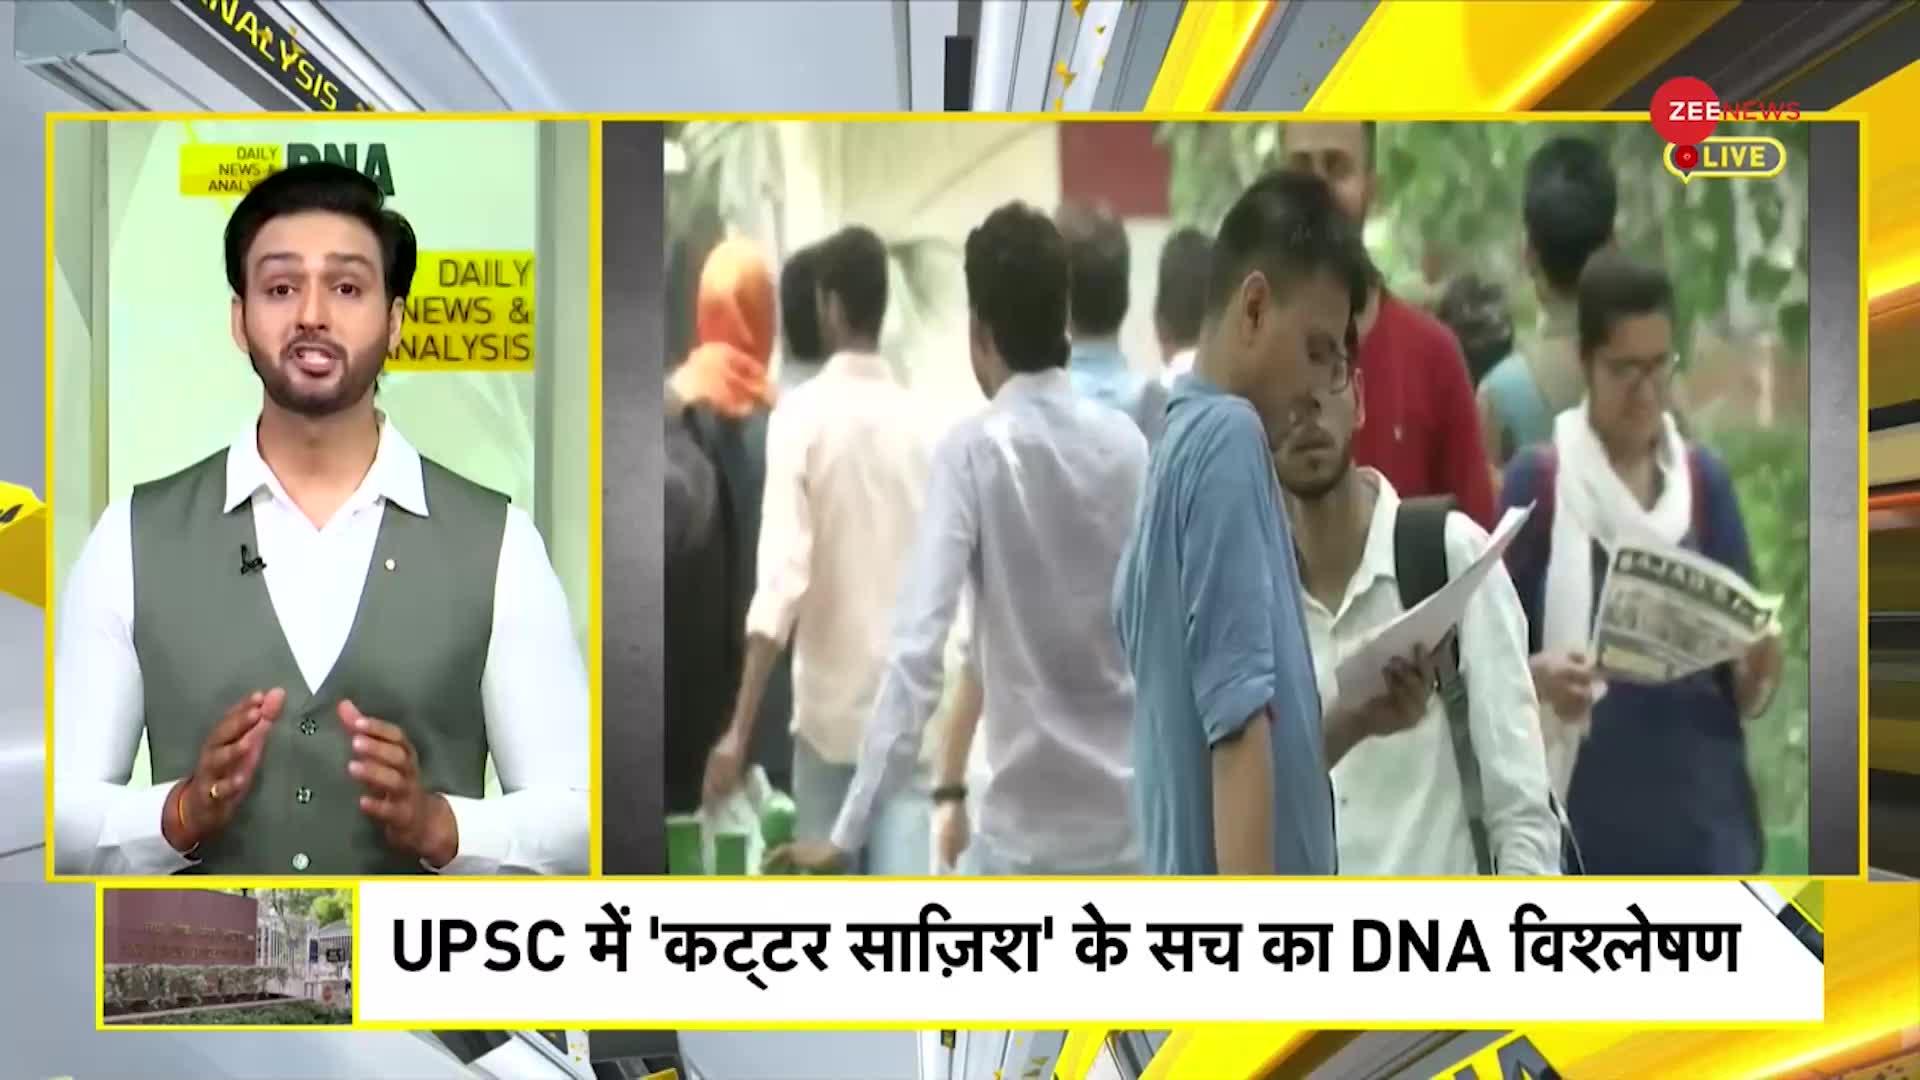 UPSC टॉपर्स की लिस्ट पर 'मजहबी सोच' का DNA टेस्ट